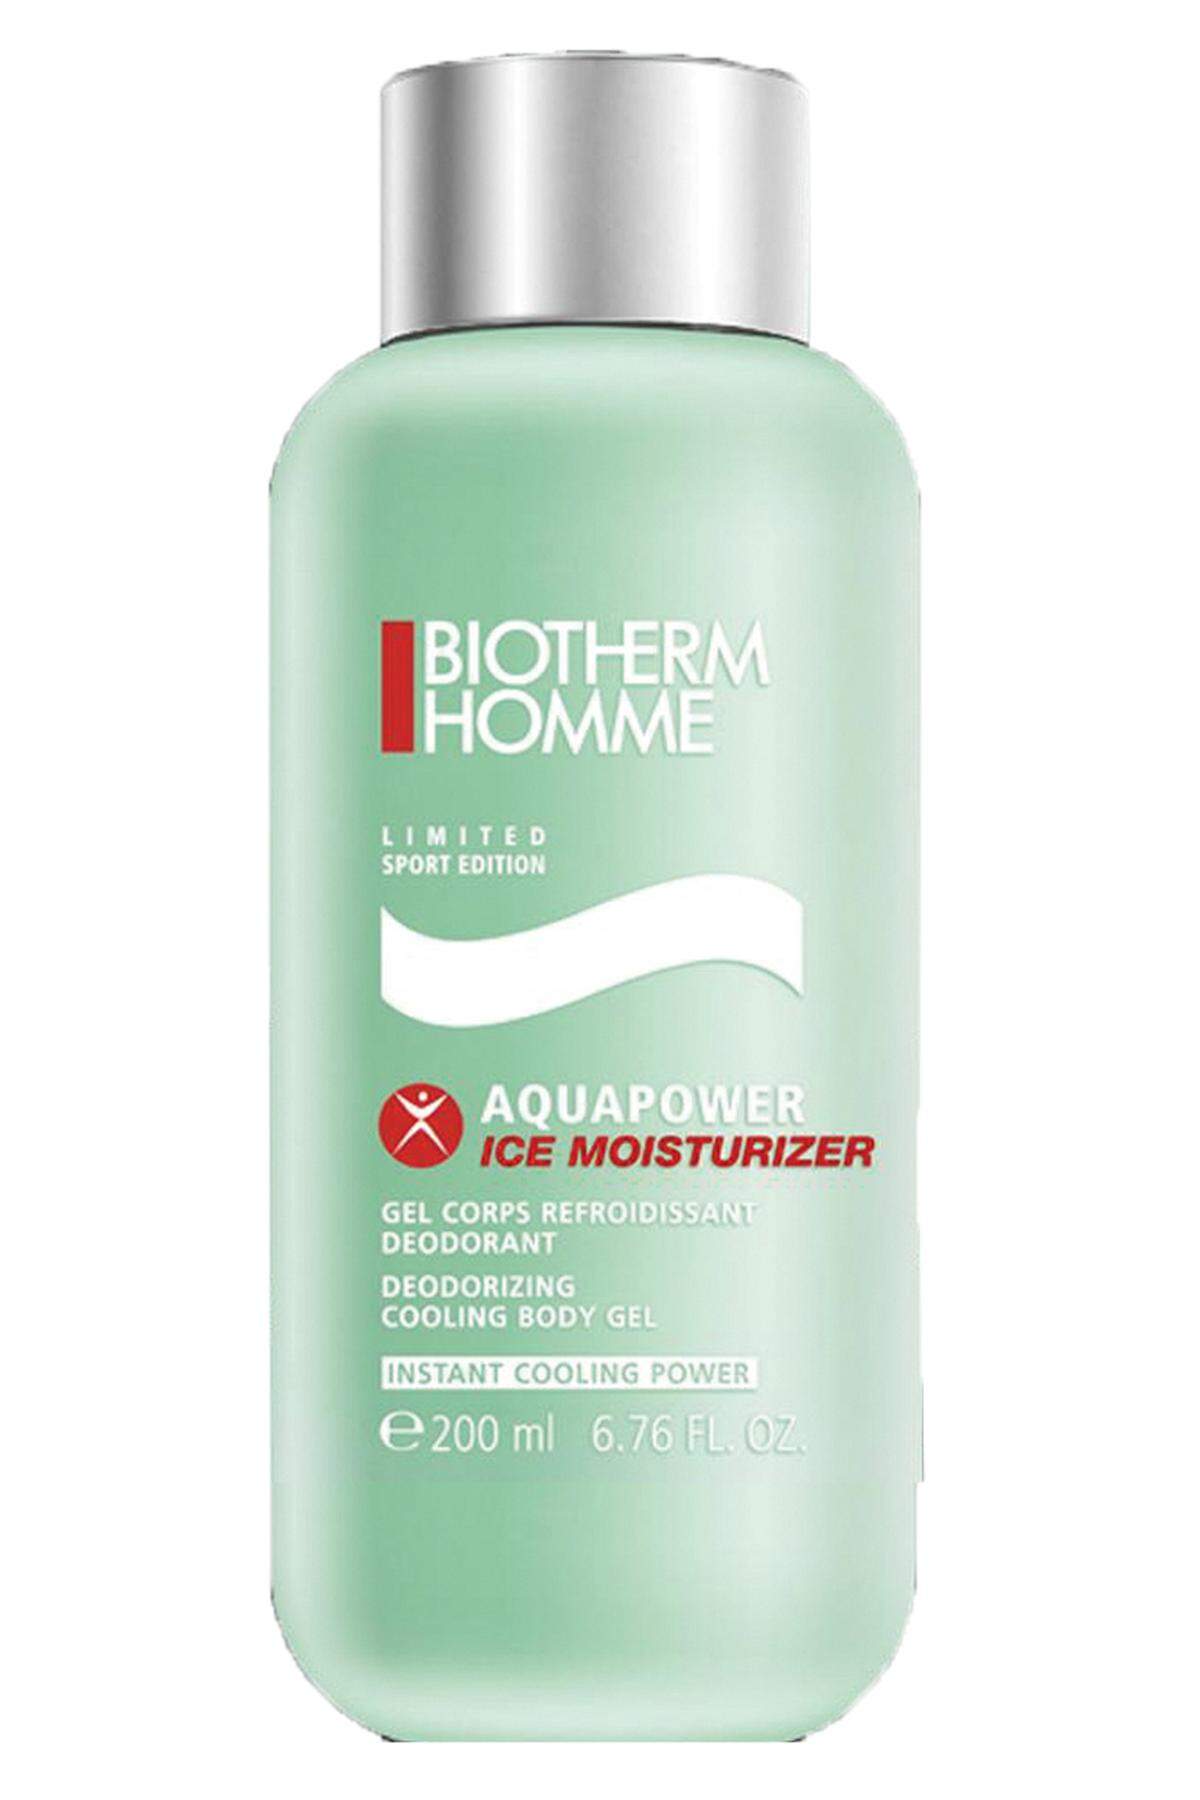 von Biotherme Homme, Feuchtigkeitspflege und Deodorant in einem. 50 ml, 24,95 Euro.